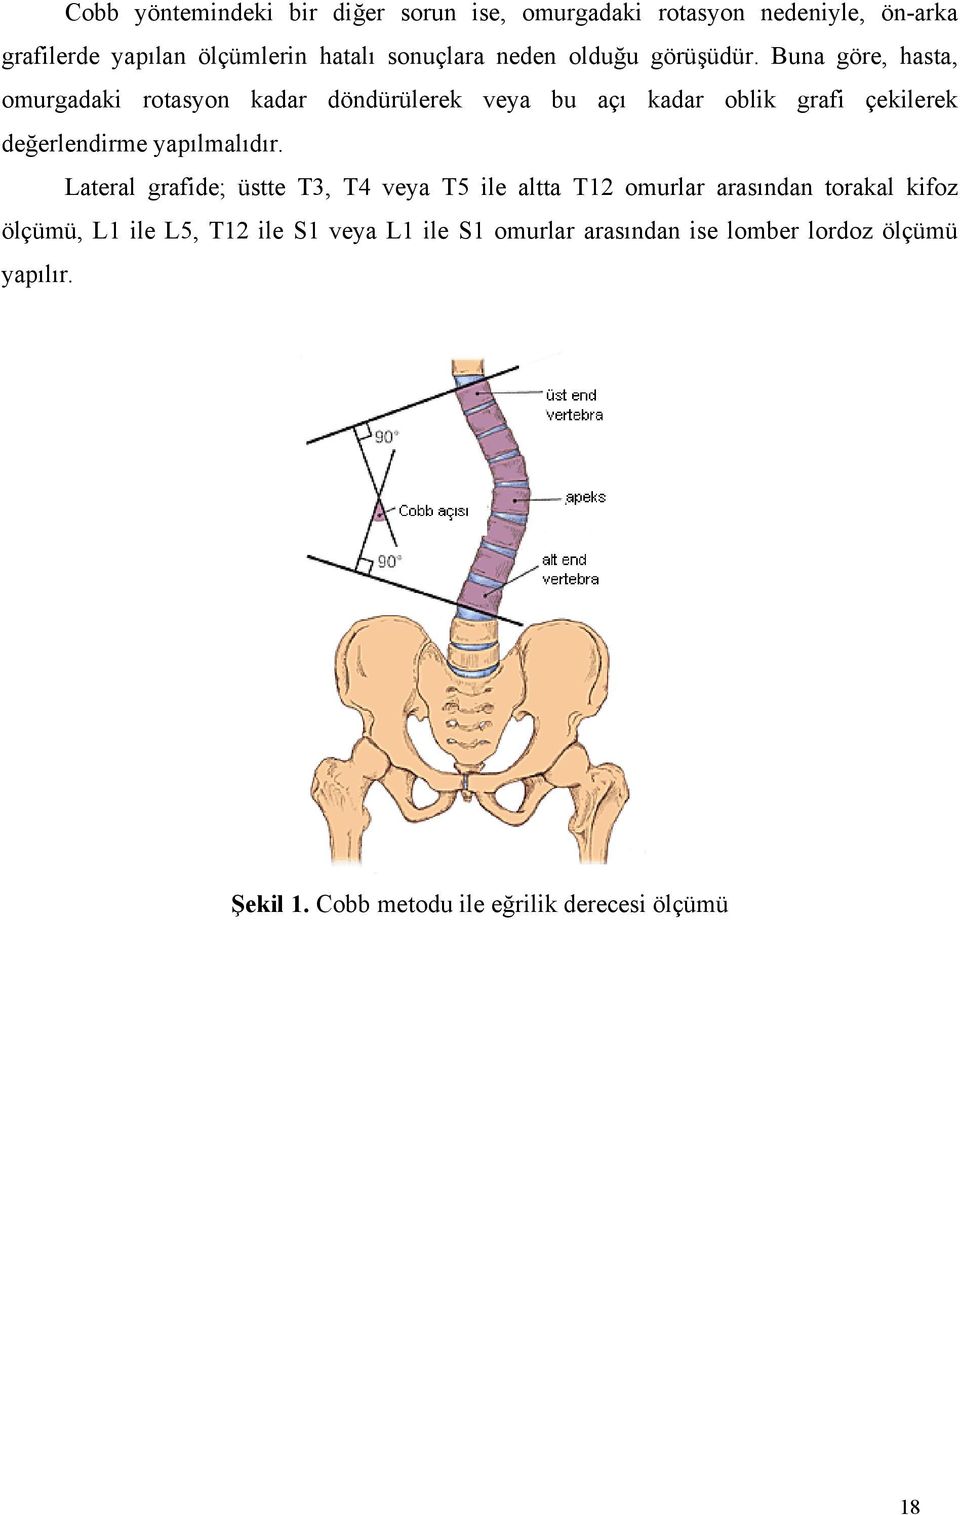 Buna göre, hasta, omurgadaki rotasyon kadar döndürülerek veya bu açı kadar oblik grafi çekilerek değerlendirme yapılmalıdır.